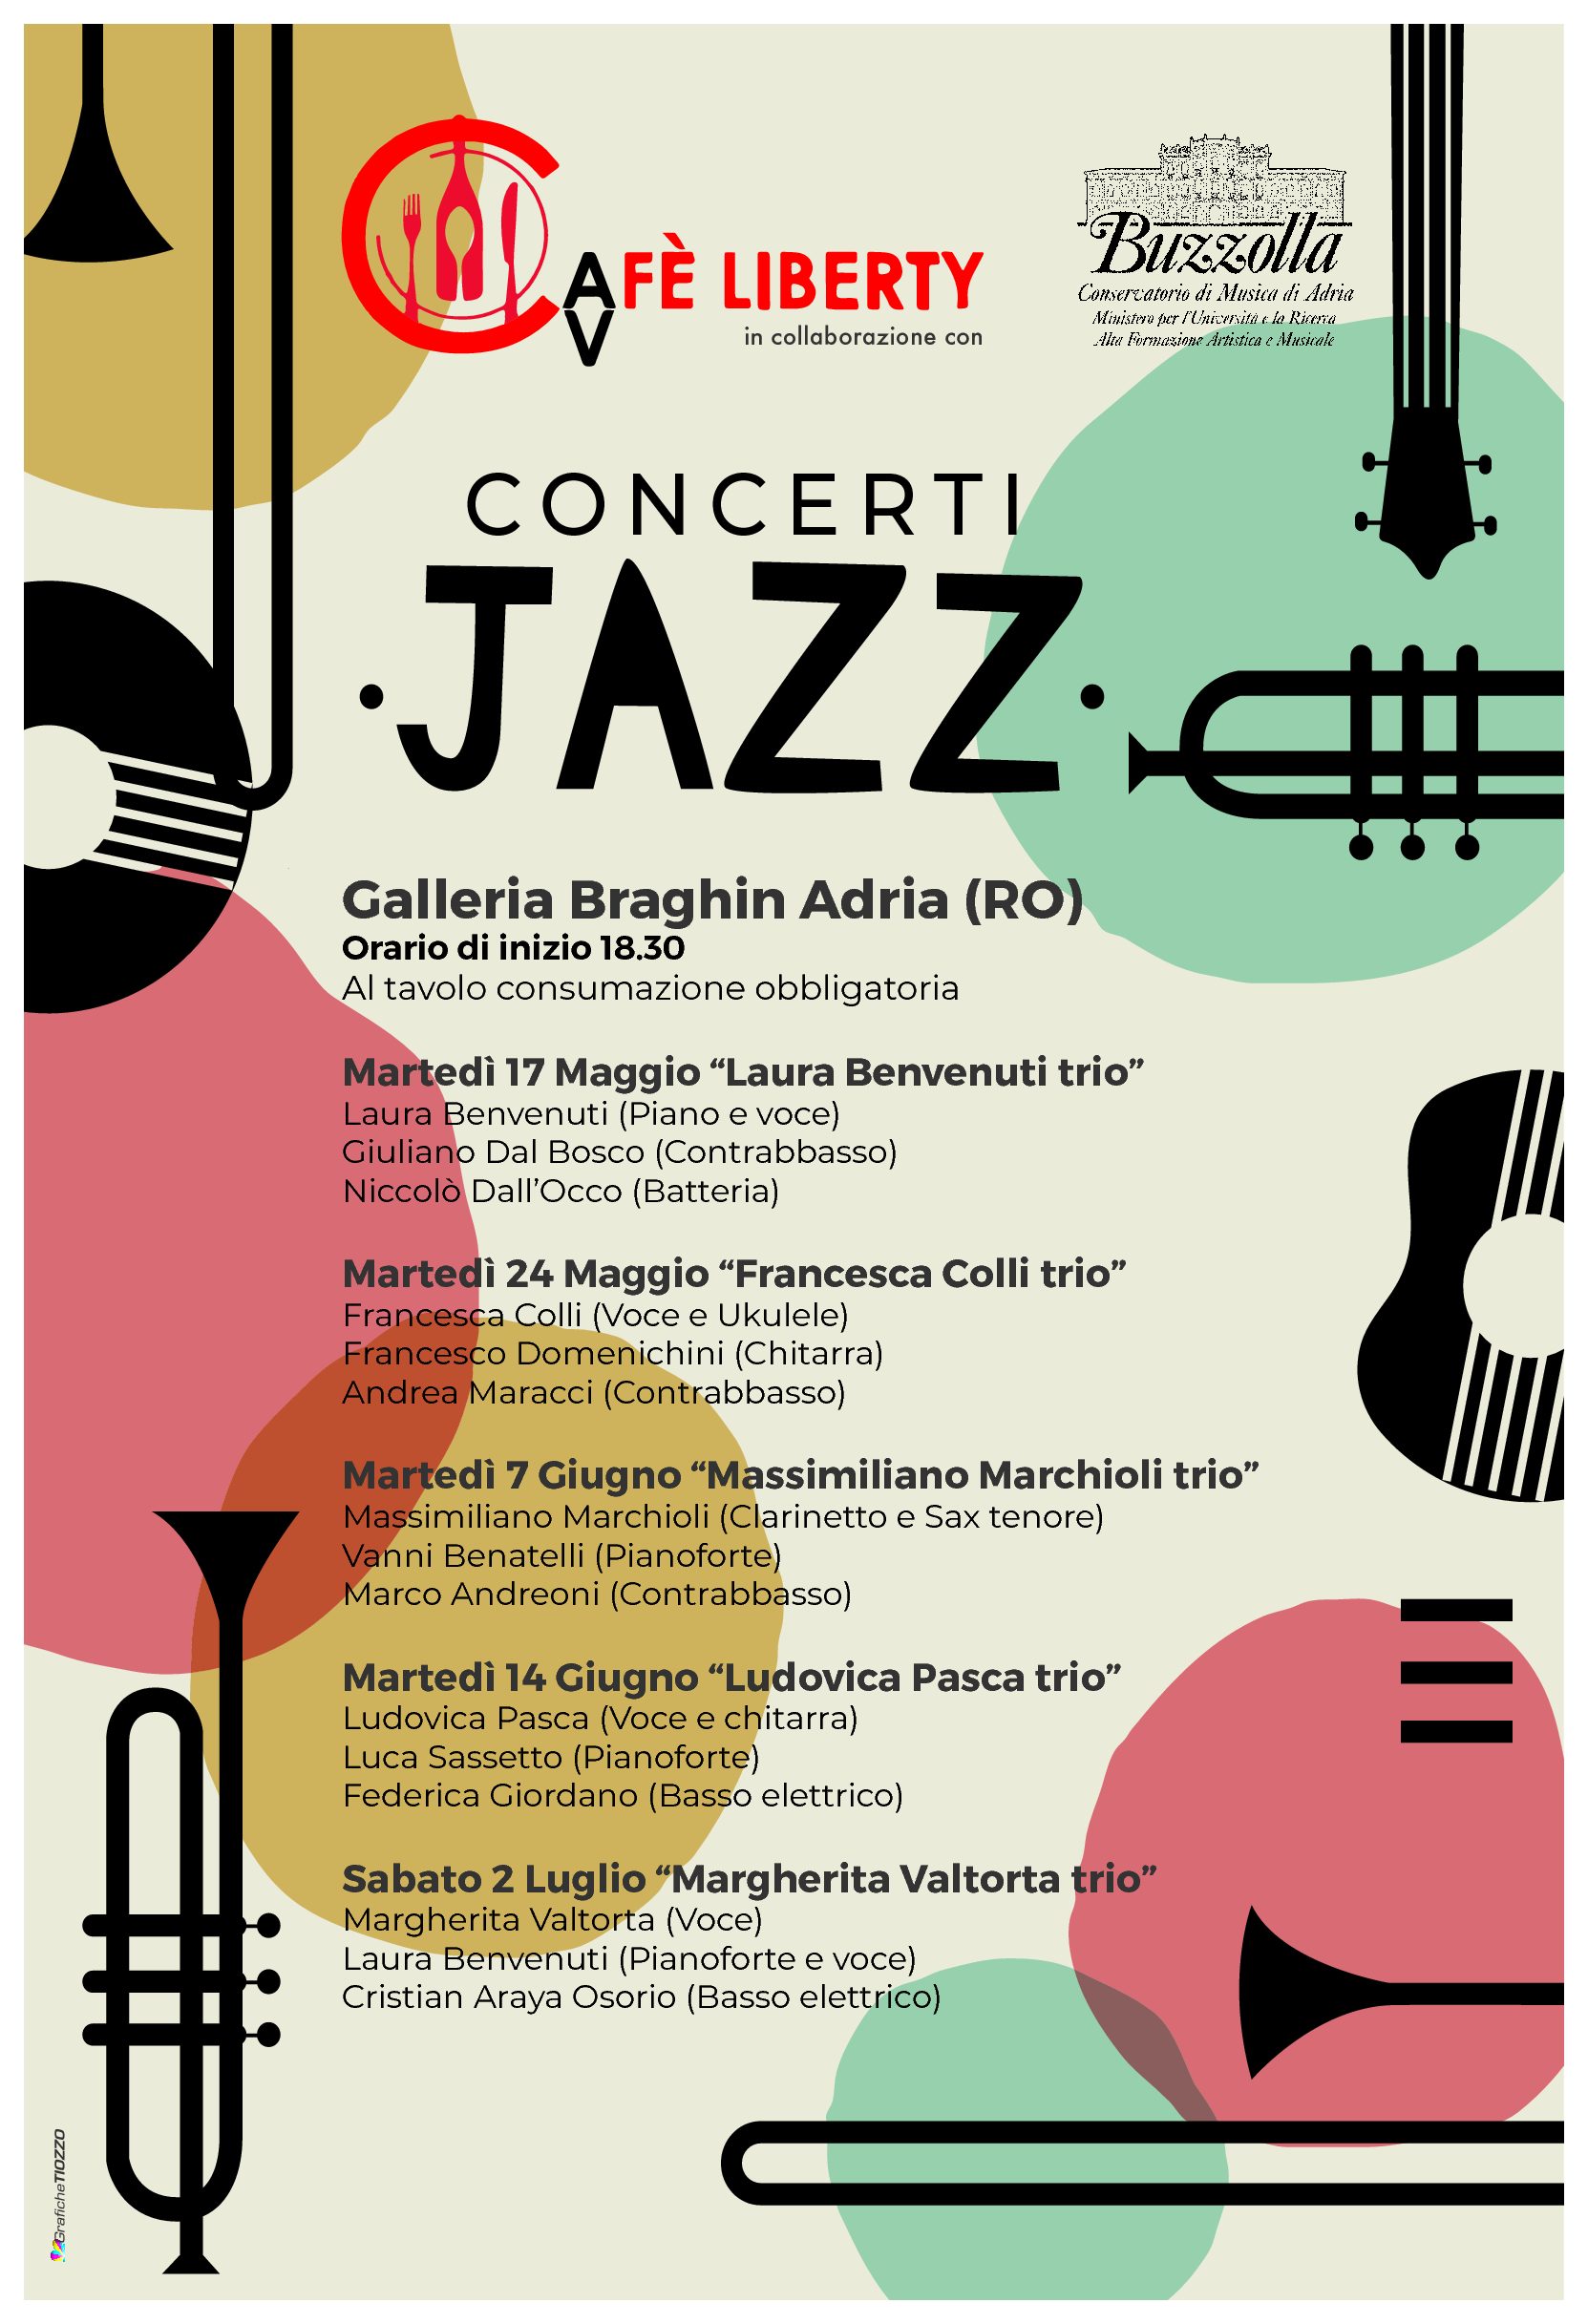 17 e 24 maggio, 7 e 14 giugno, 2 luglio 2022 Concerti Jazz